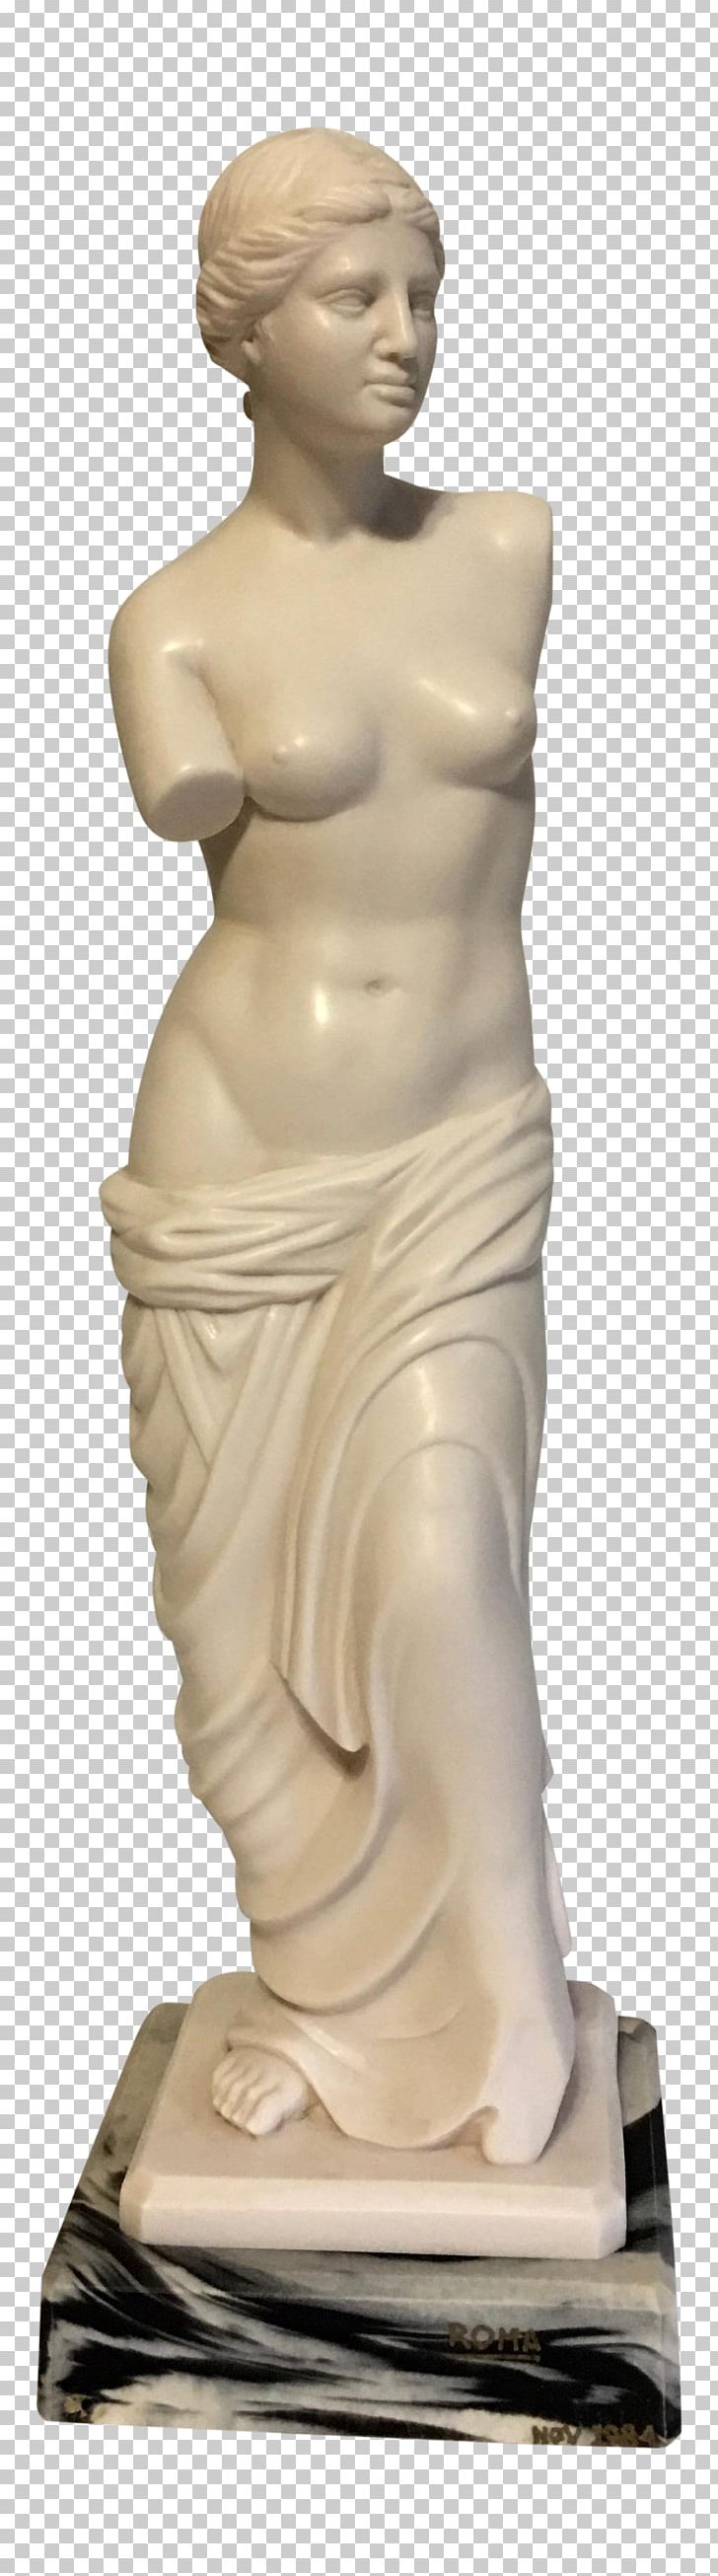 Statue Venus De Milo Marble Sculpture Classical Sculpture PNG, Clipart, Artifact, Chairish, Classical Sculpture, Classicism, Composite Free PNG Download